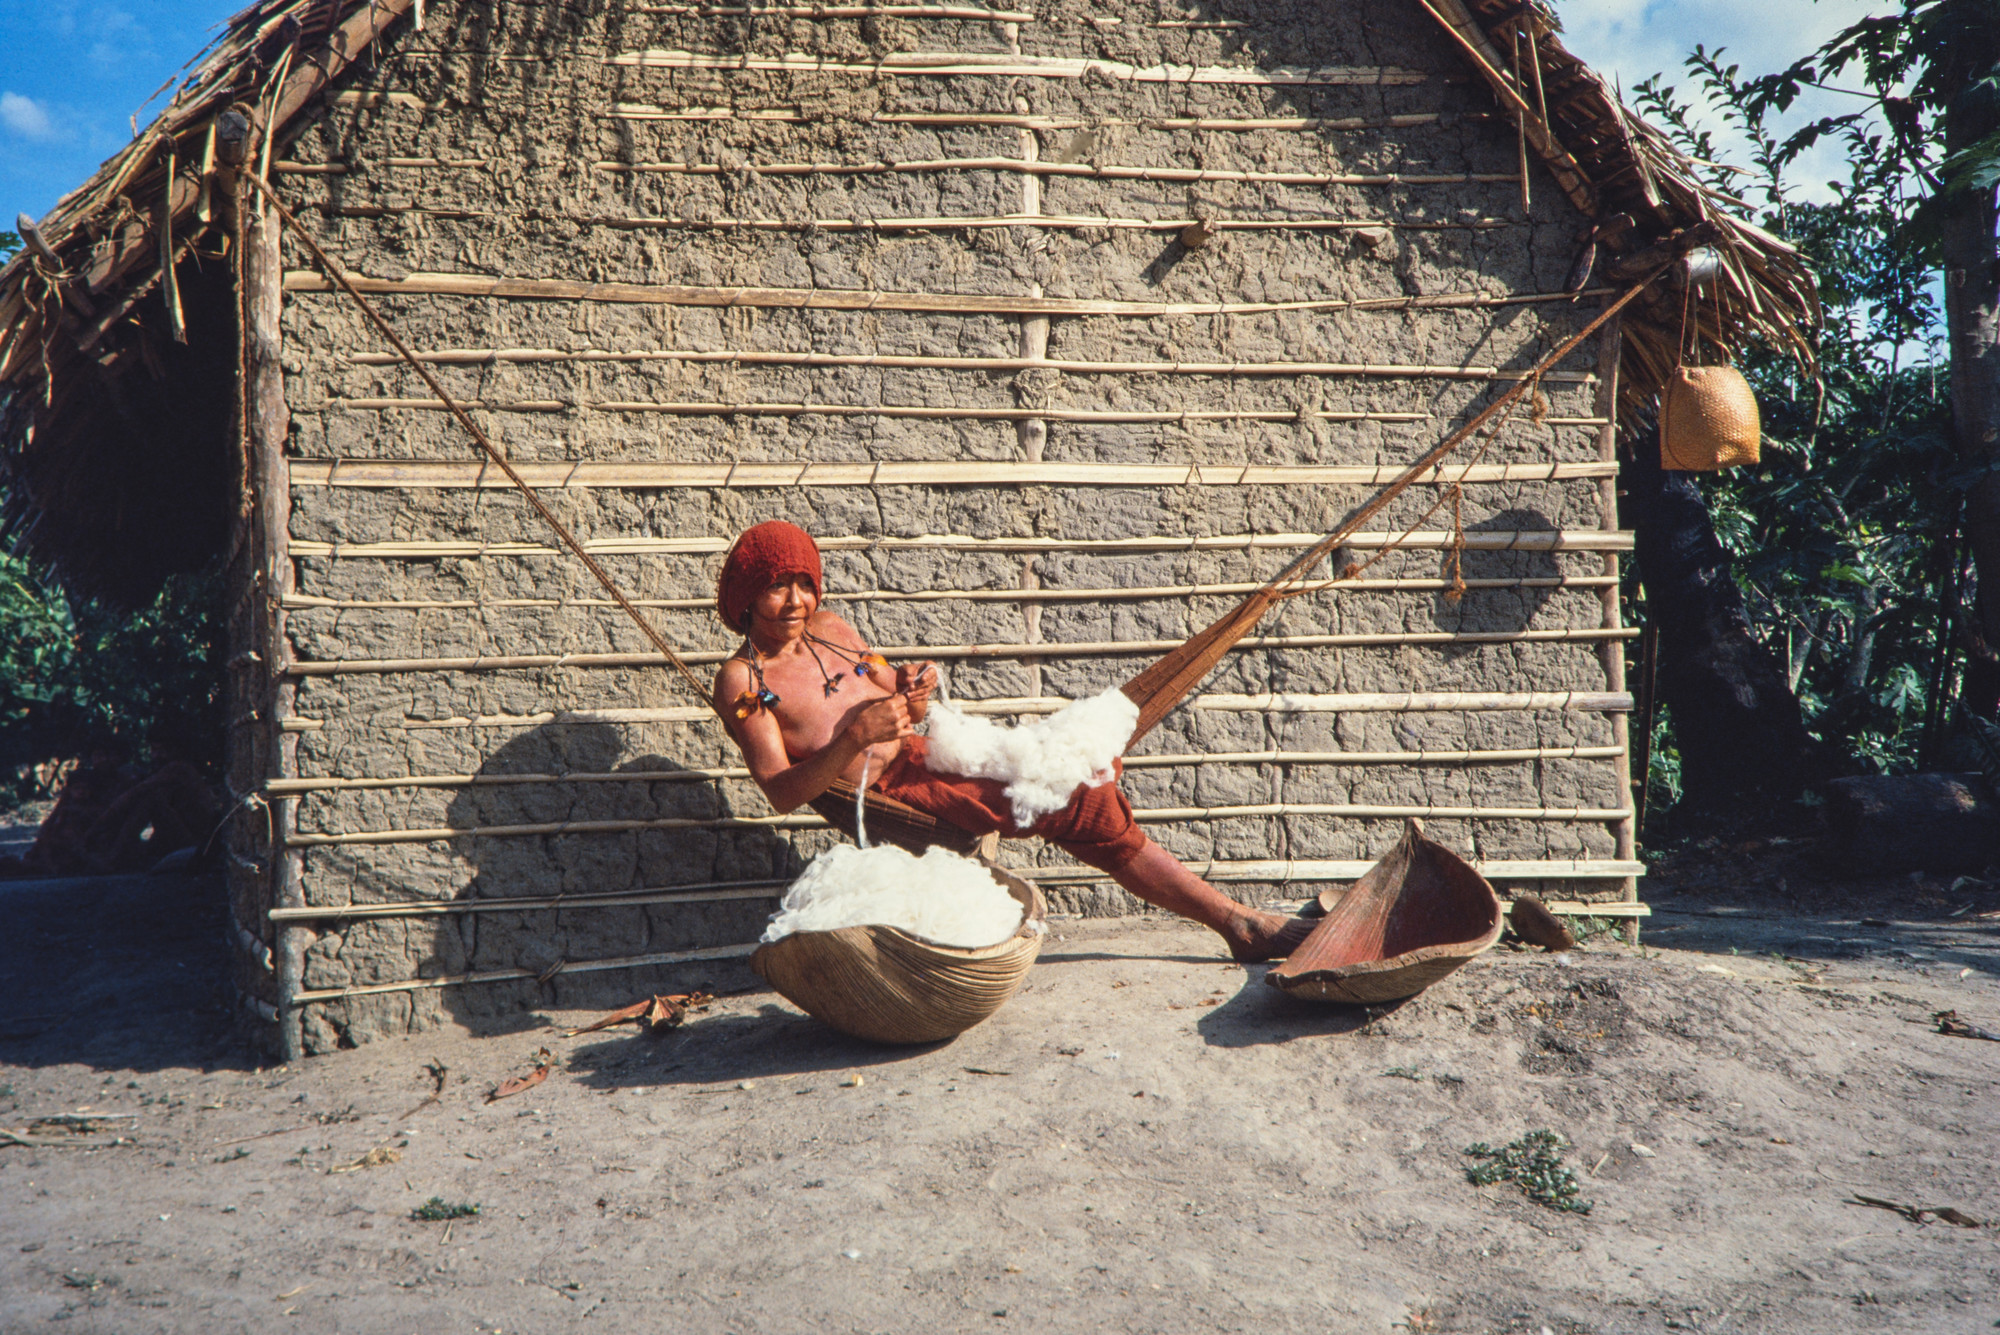 Araweté tecendo algodão para fiar, Terra Indígena Araweté/Igarapé Ipixuna, Pará @Eduardo Viveiros de Castro